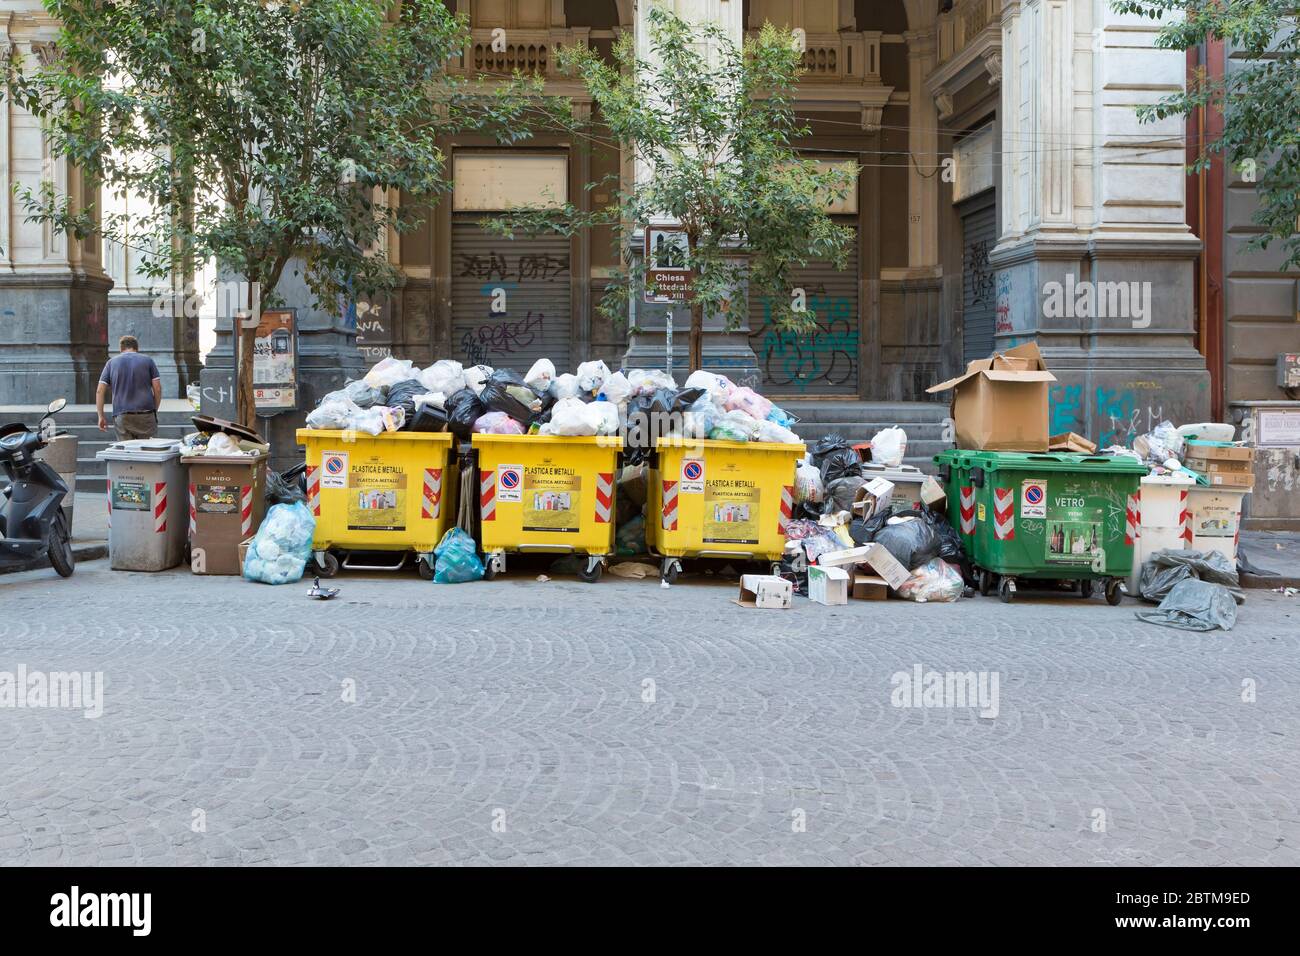 Auf den Straßen von Neapel, Italien, stapelte sich Müll Stockfoto